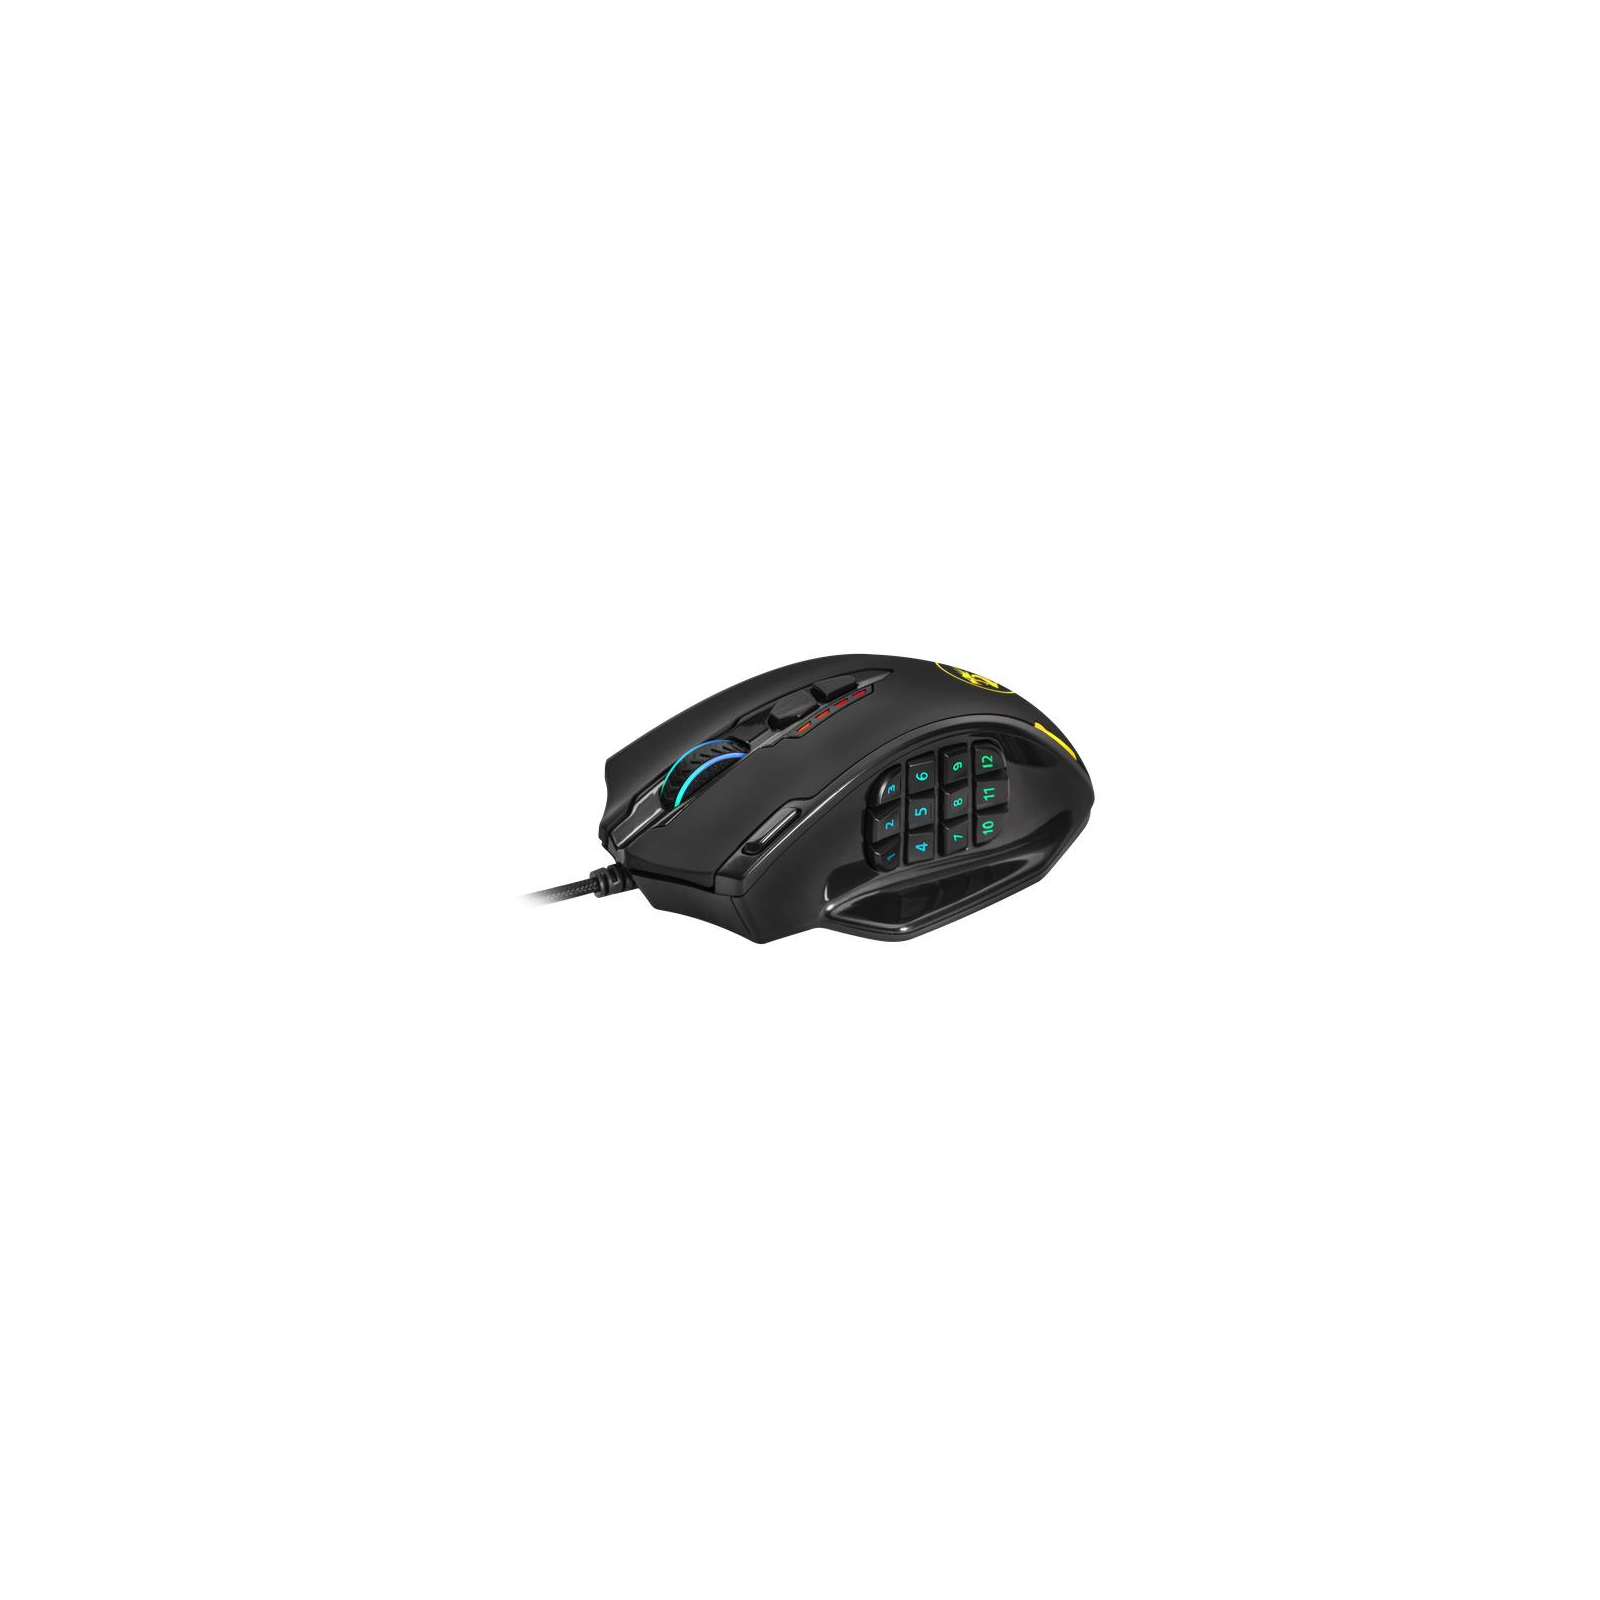 Мышка Redragon Impact RGB IR USB Black (78322)